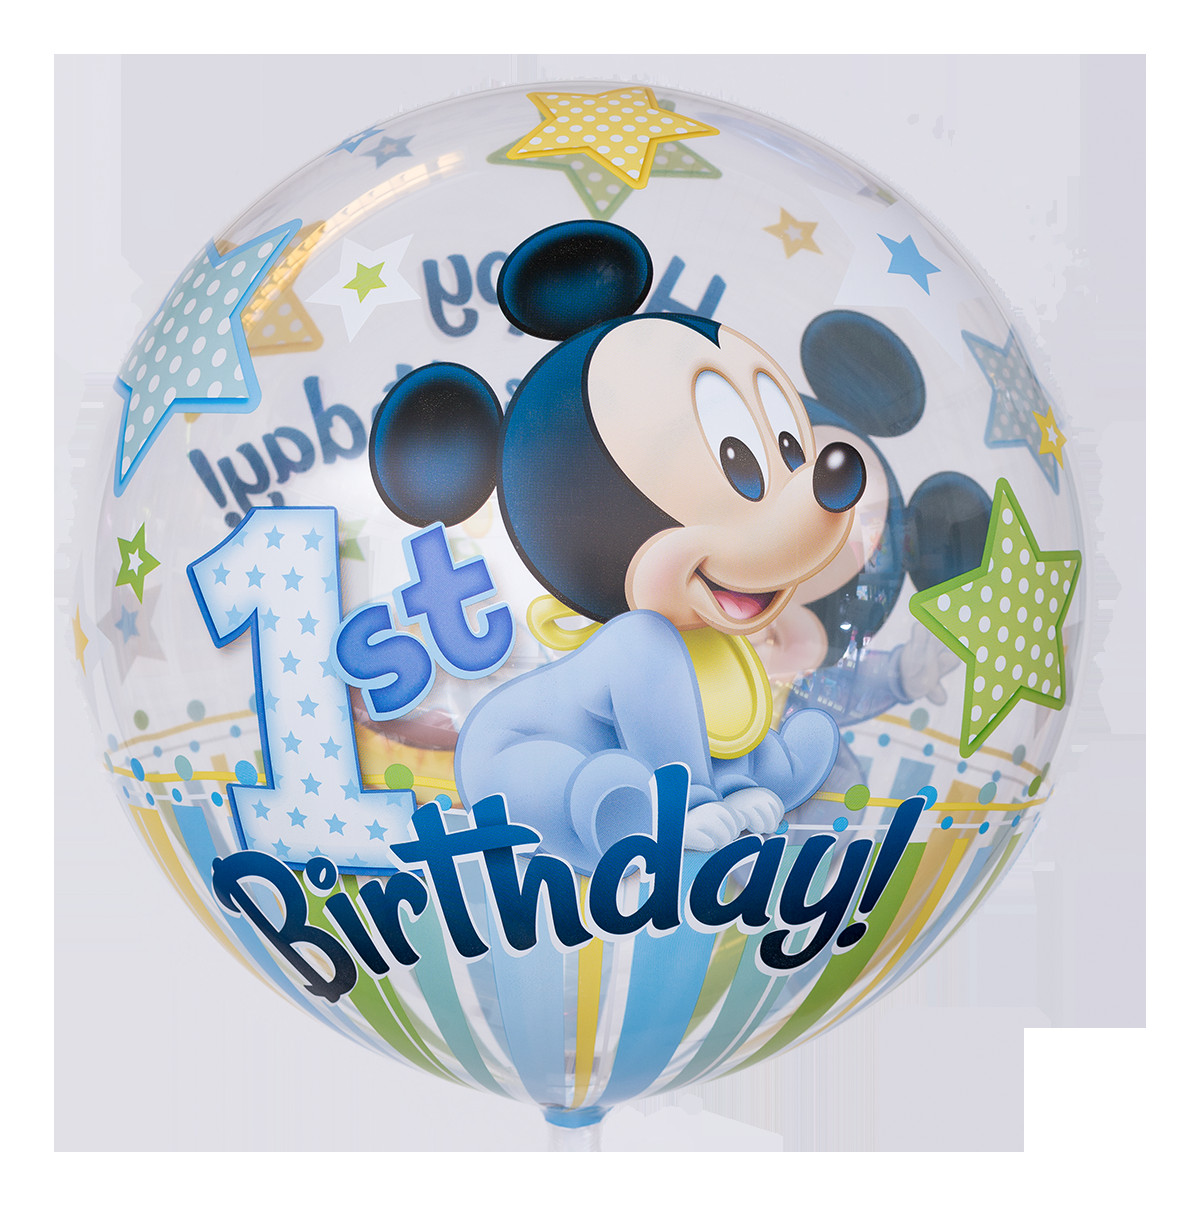 Geburtstagswünsche 1 Geburtstag
 Süßer "Mickey Maus" Bubble Ballon